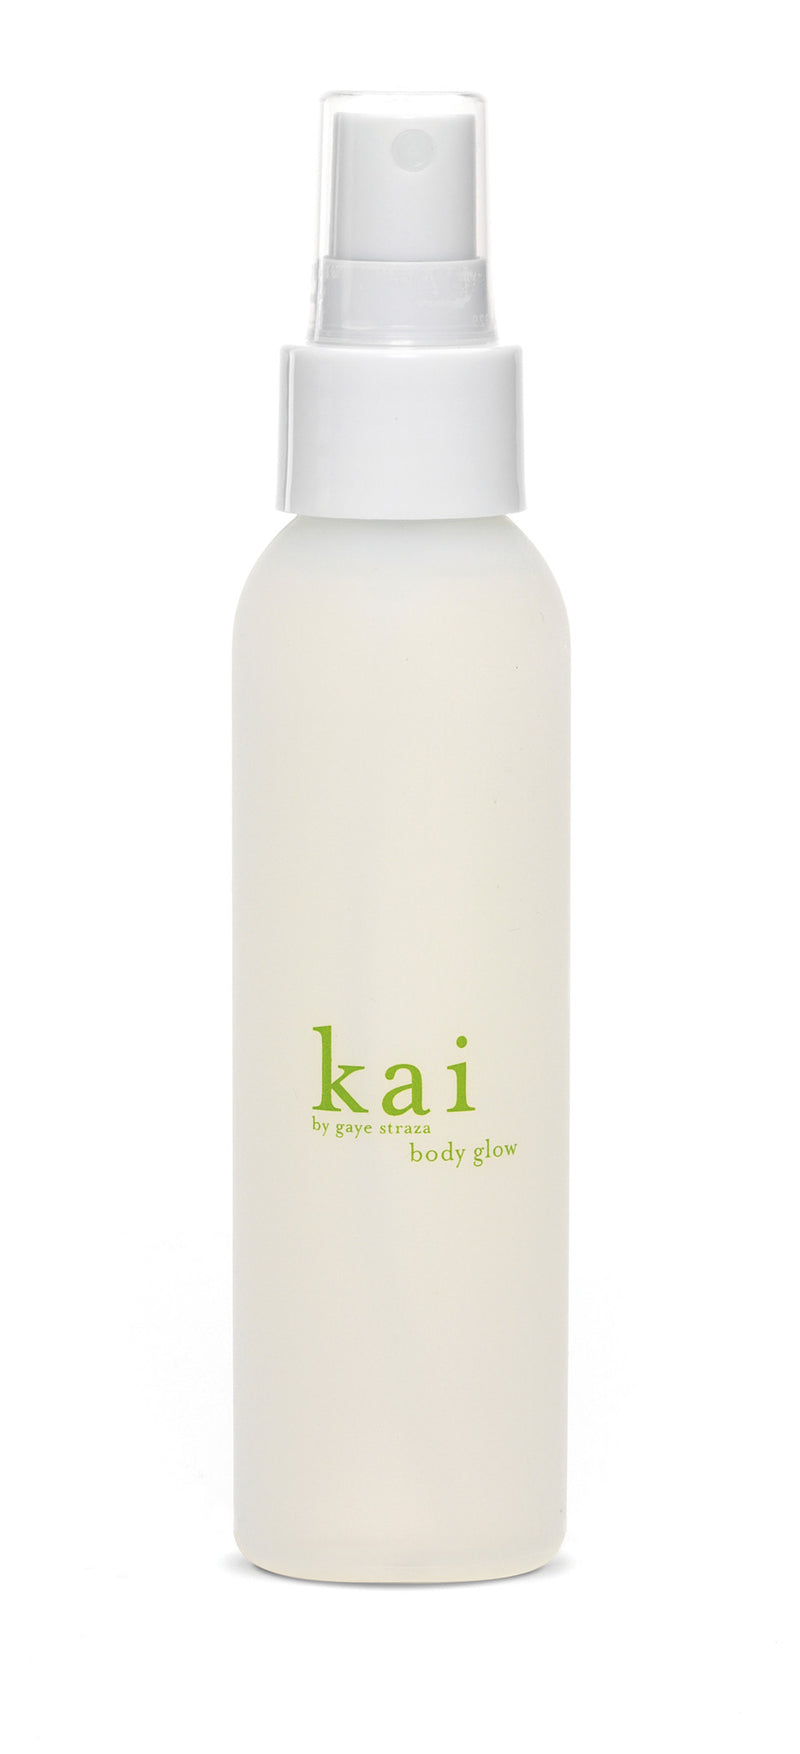 media image for kai body glow design by kai fragrance 1 239